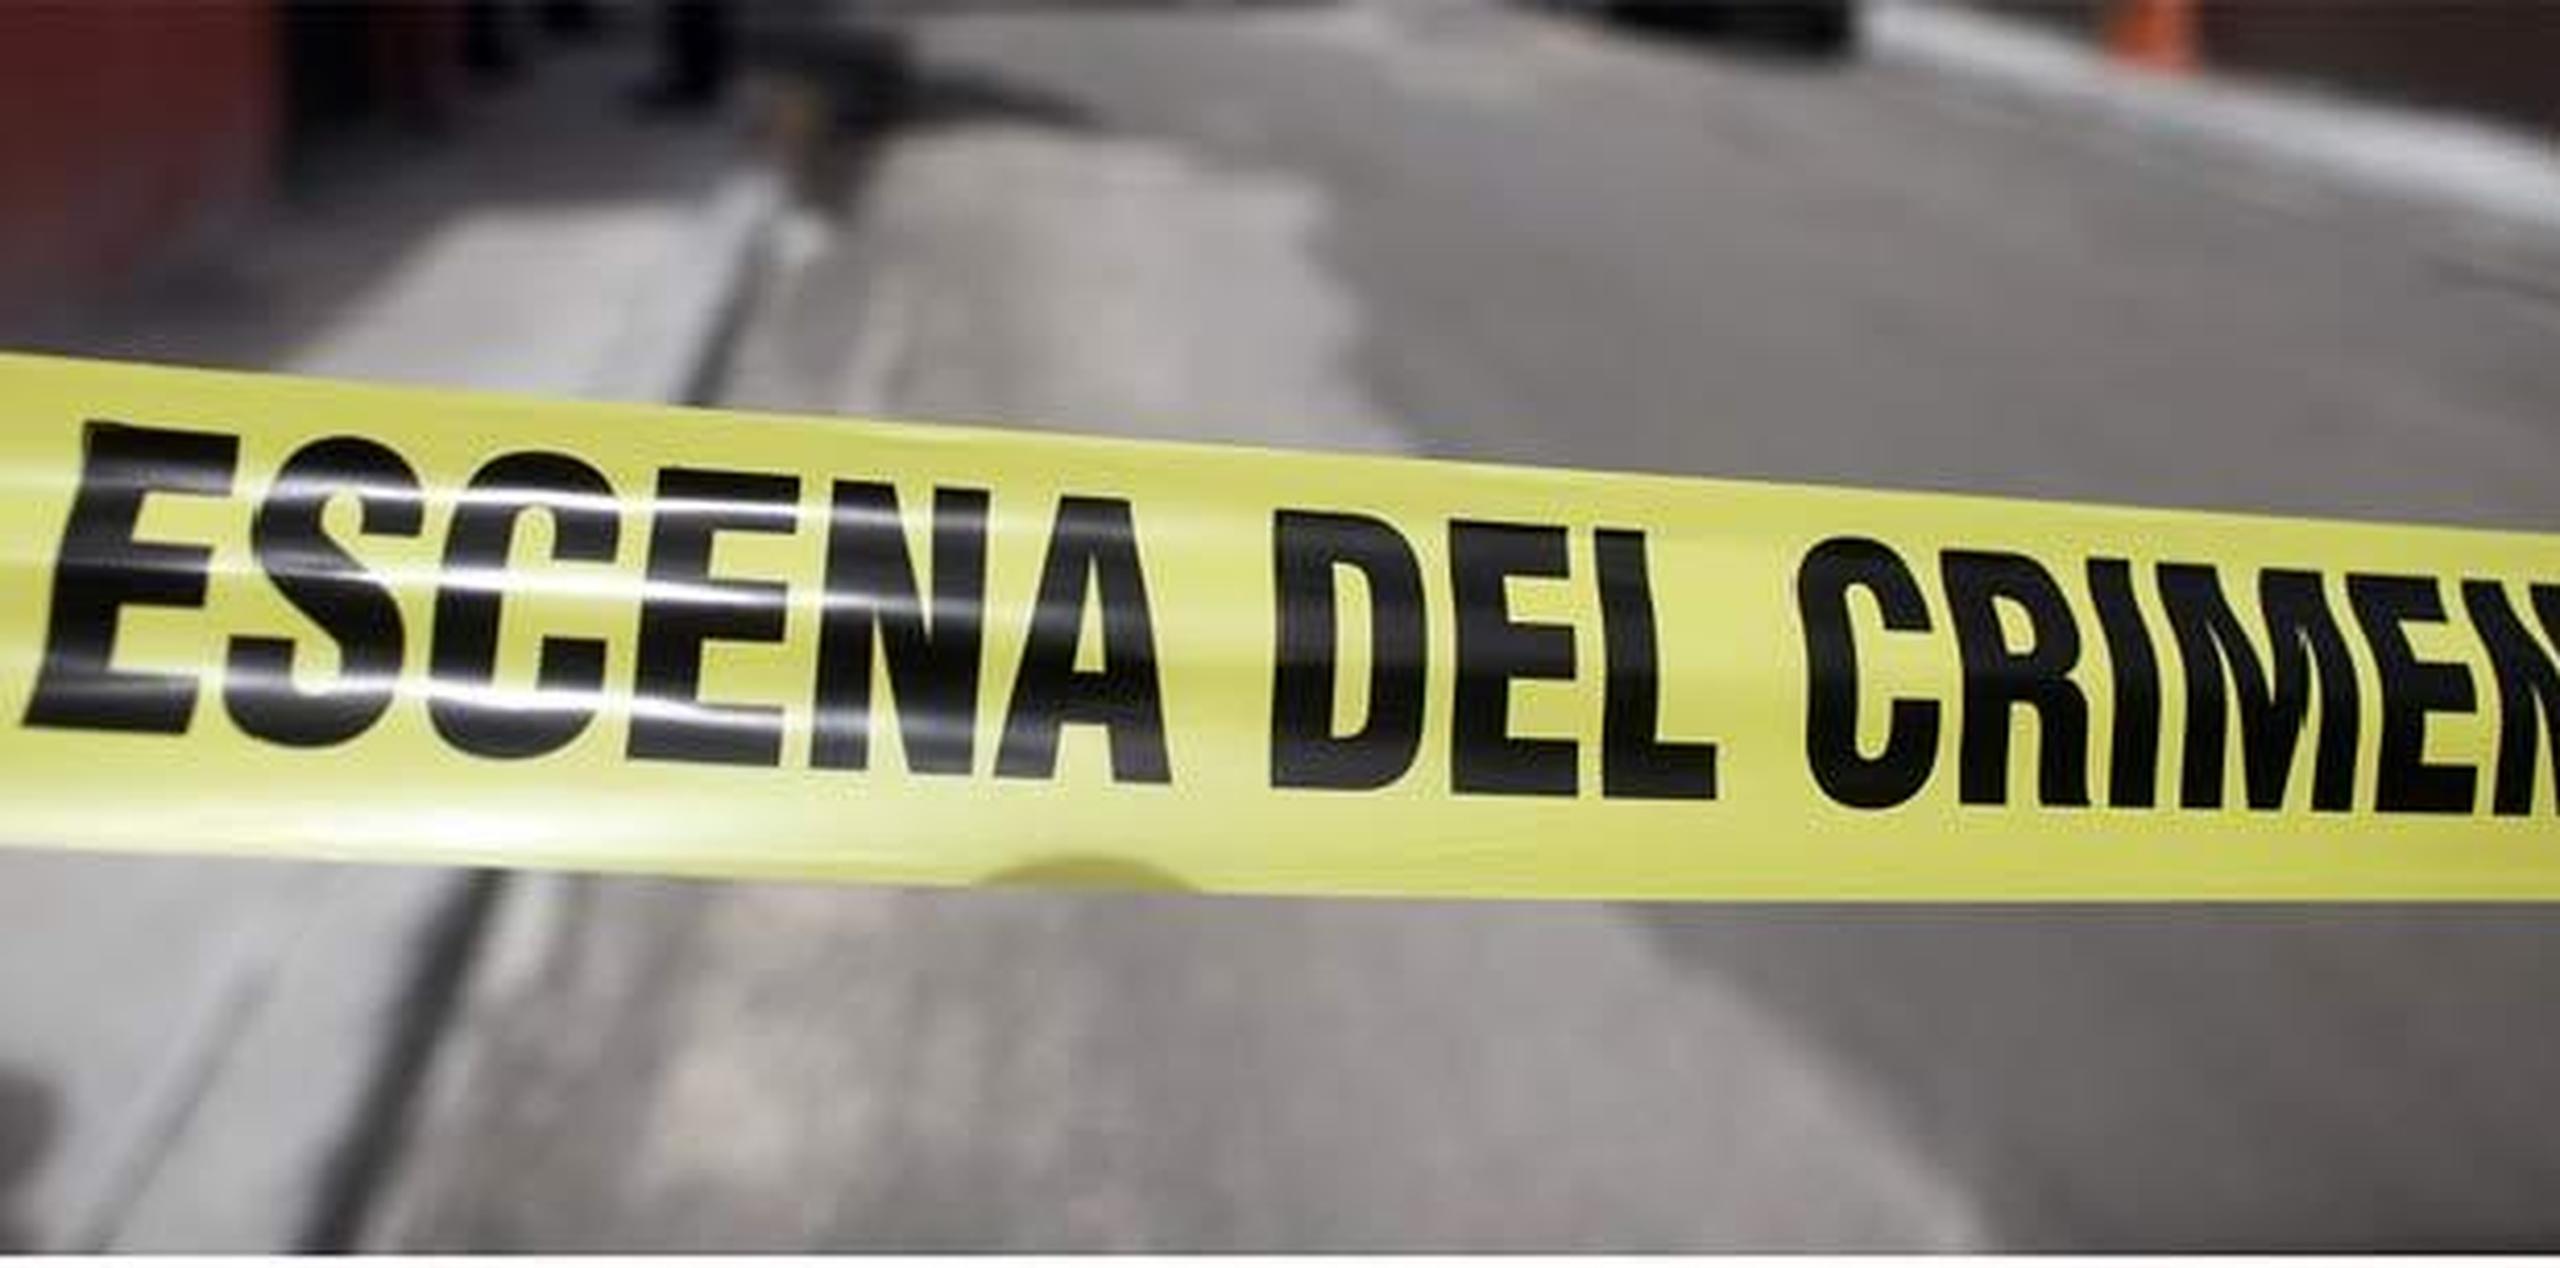 Horas antes, el sujeto señalado como sospechoso había sido entrevistado por agentes de la División de Homicidios en Mayagüez. (Archivo)